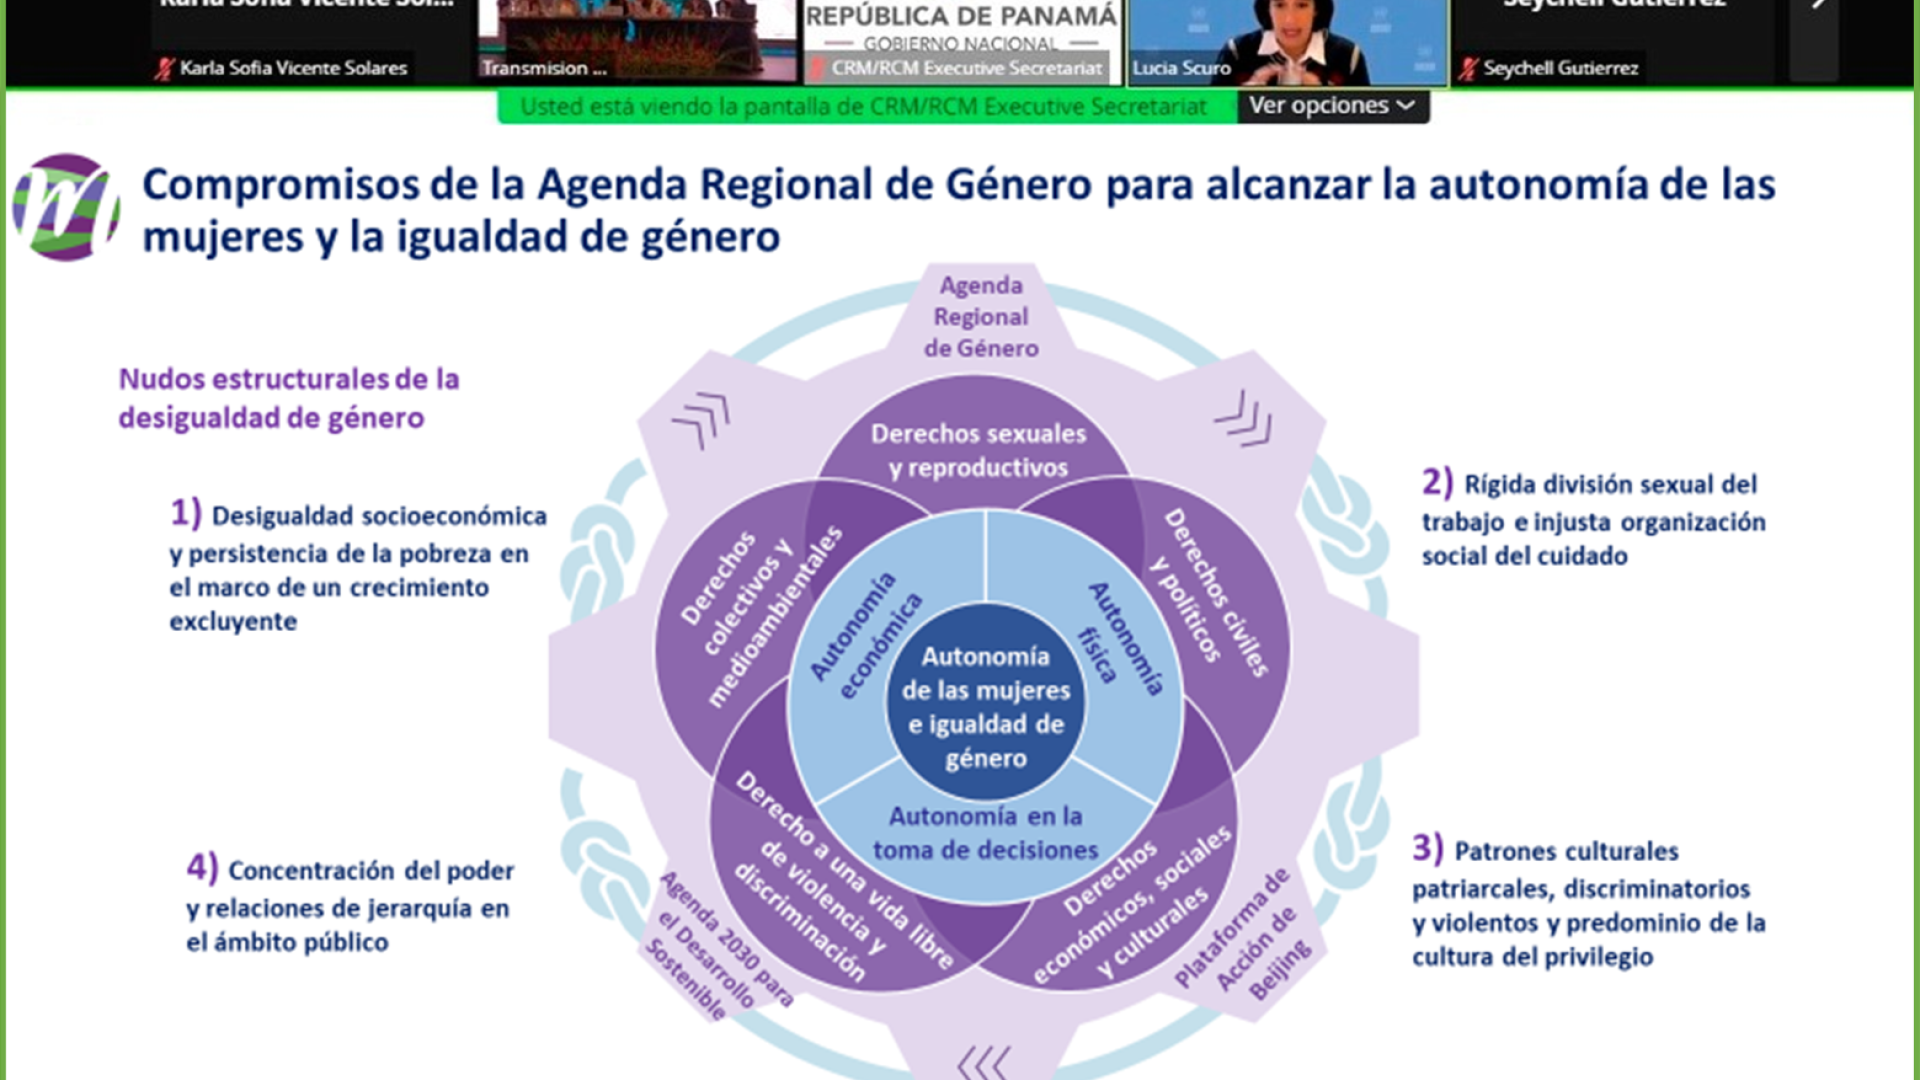 La CEPAL destaca acuerdos regionales para garantizar los derechos de las mujeres en todas las etapas del ciclo migratorio CEPAL